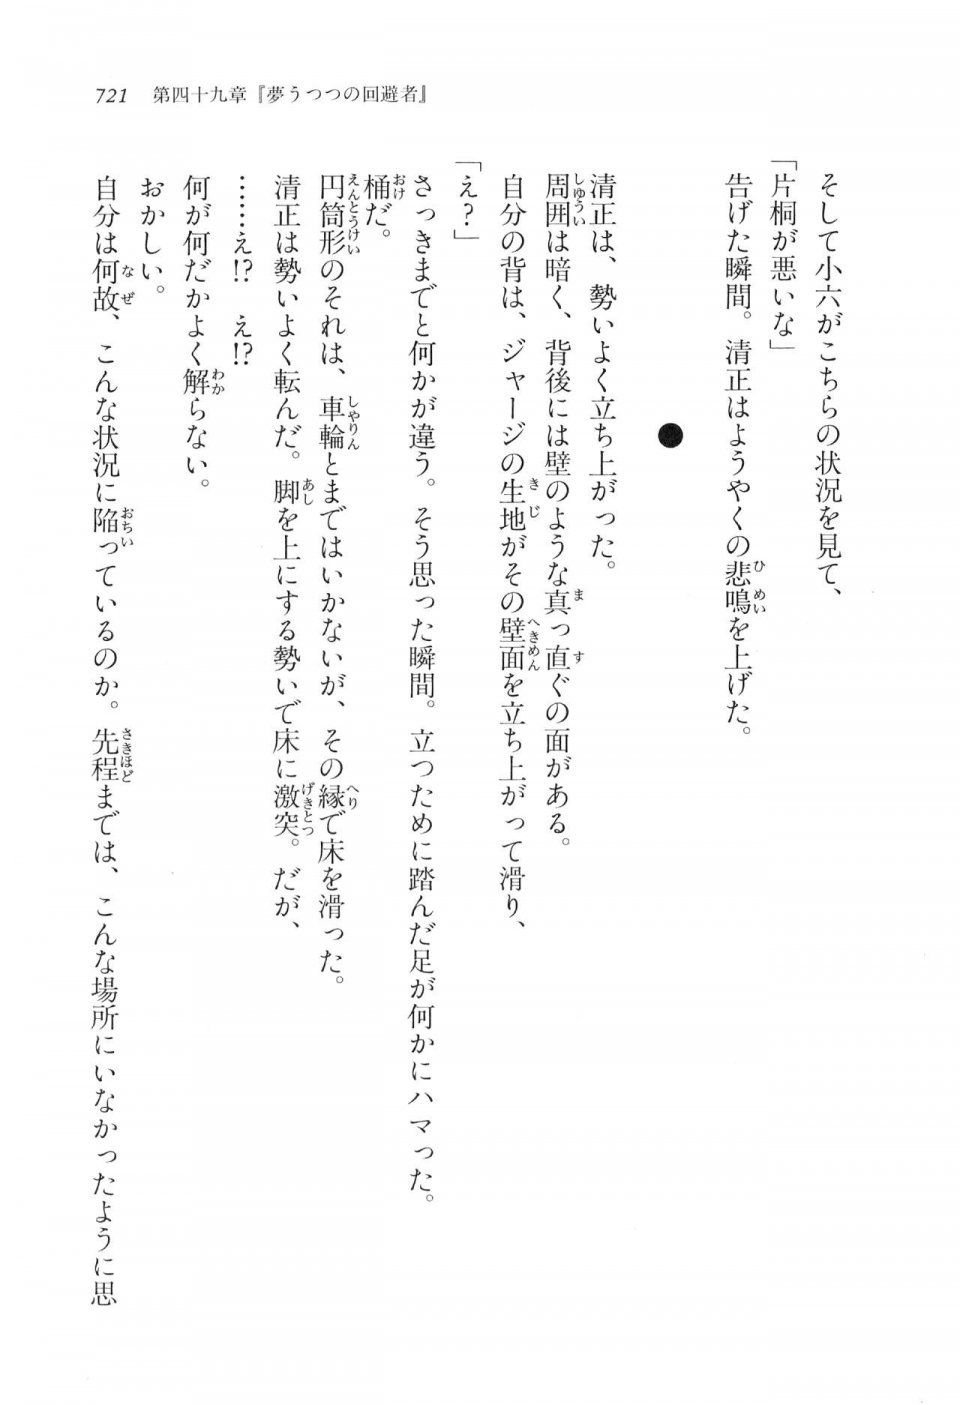 Kyoukai Senjou no Horizon LN Vol 17(7B) - Photo #723